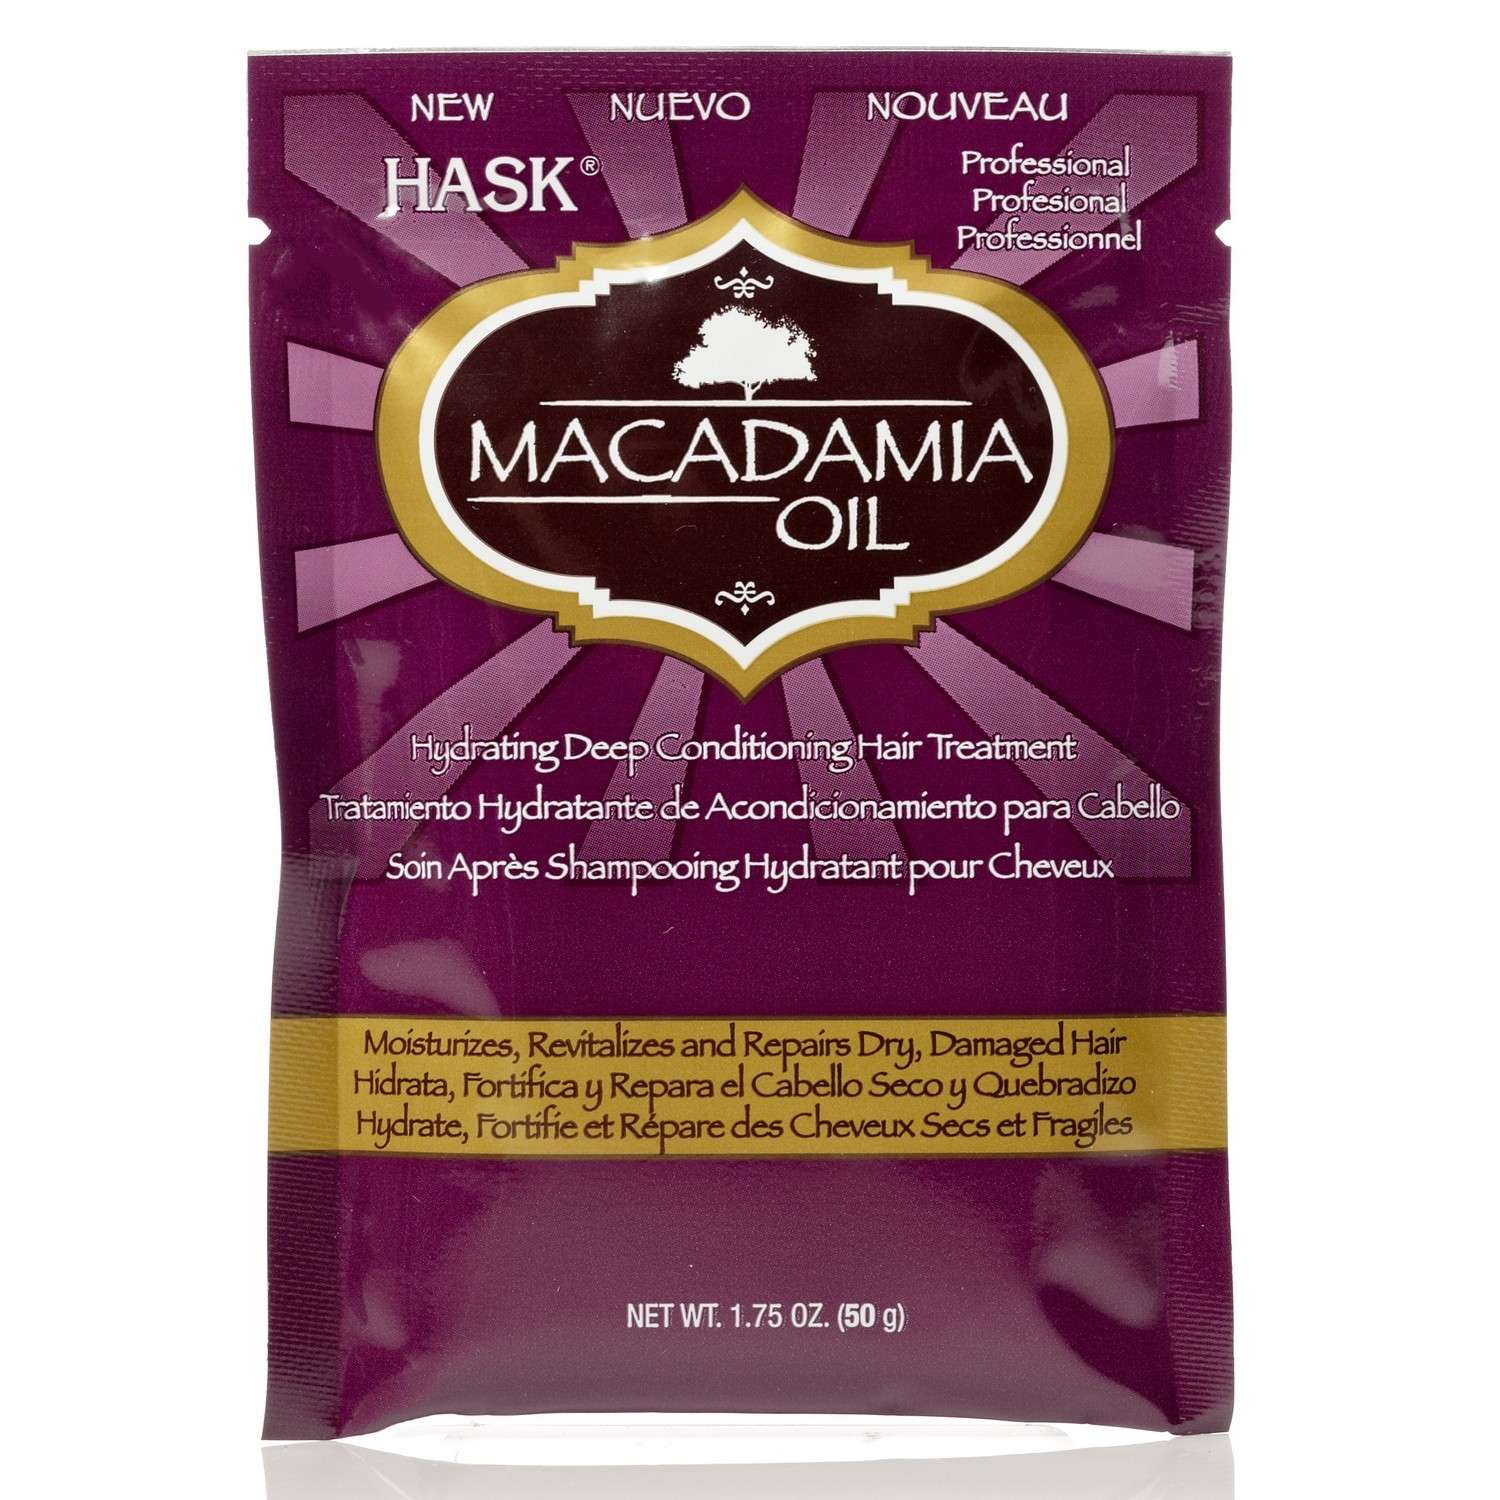 Увлажняющая маска HASK с маслом Макадамии - фото 1